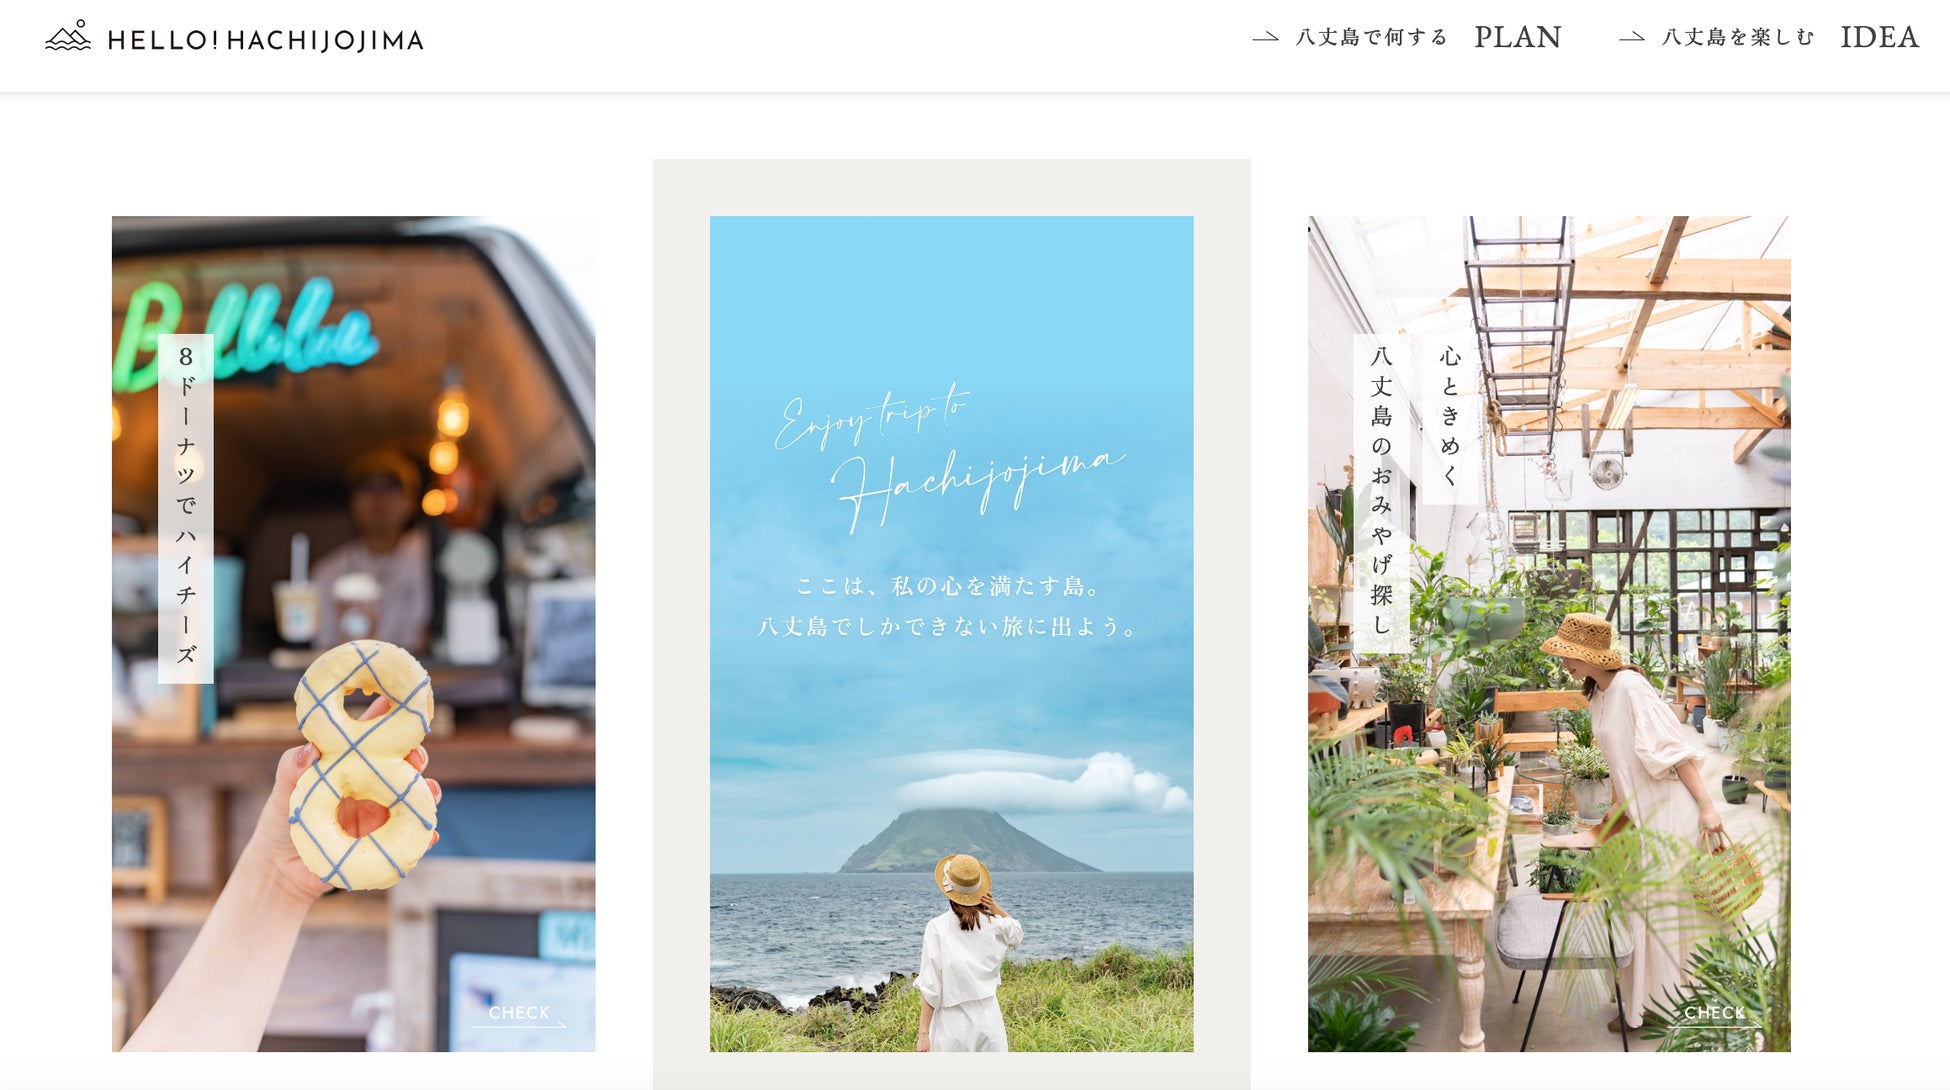 観光プロモーション支援 東京都の島「八丈島」の特設サイト「HELLO! HACHIJOJIMA」を制作